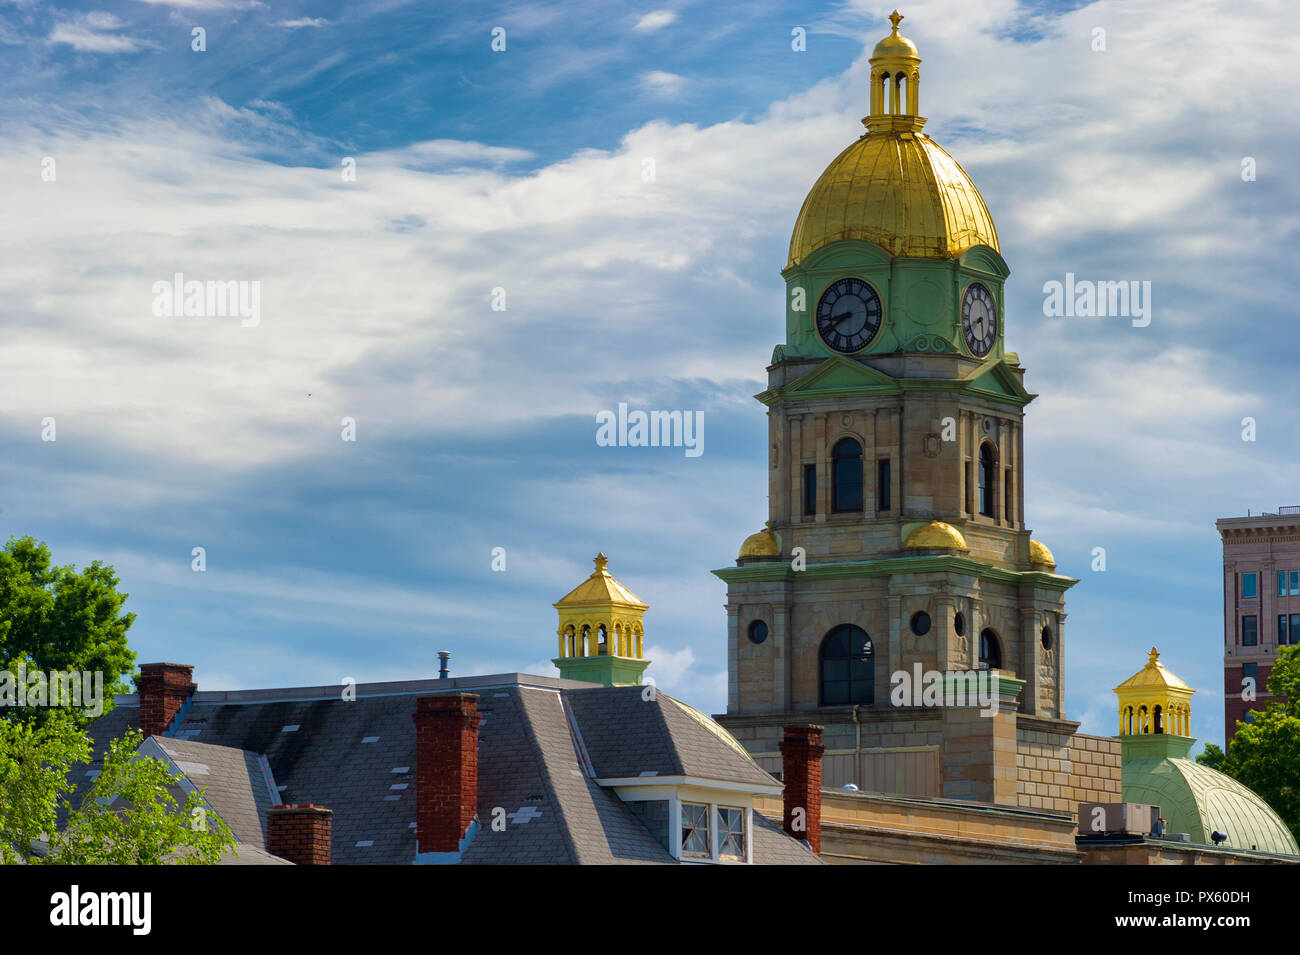 Orologio e cupola dorata di Huntington West Virginia, Cabell County Court House sorge sopra i tetti di altri edifici contro un cielo nuvoloso. Foto Stock